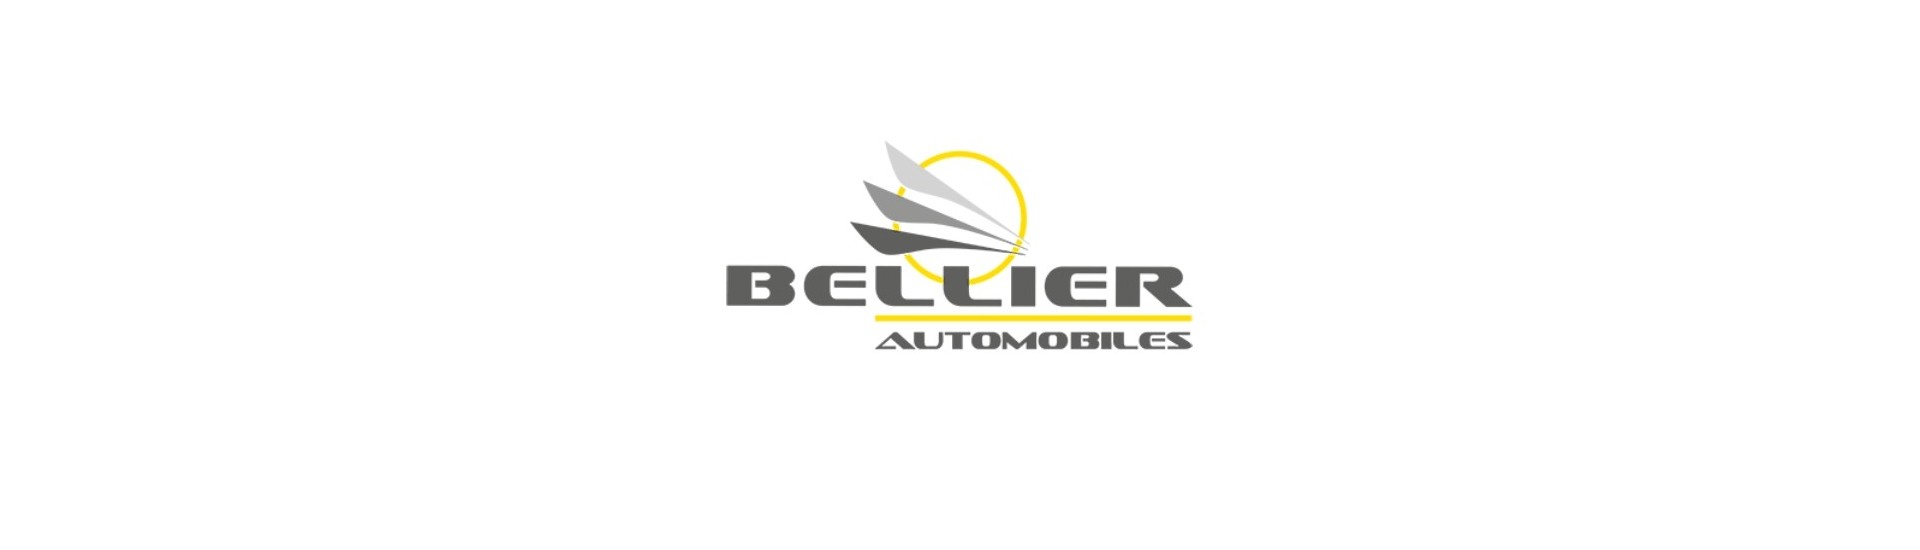 Saída de escape ao melhor preço para um carro sem licença Bellier